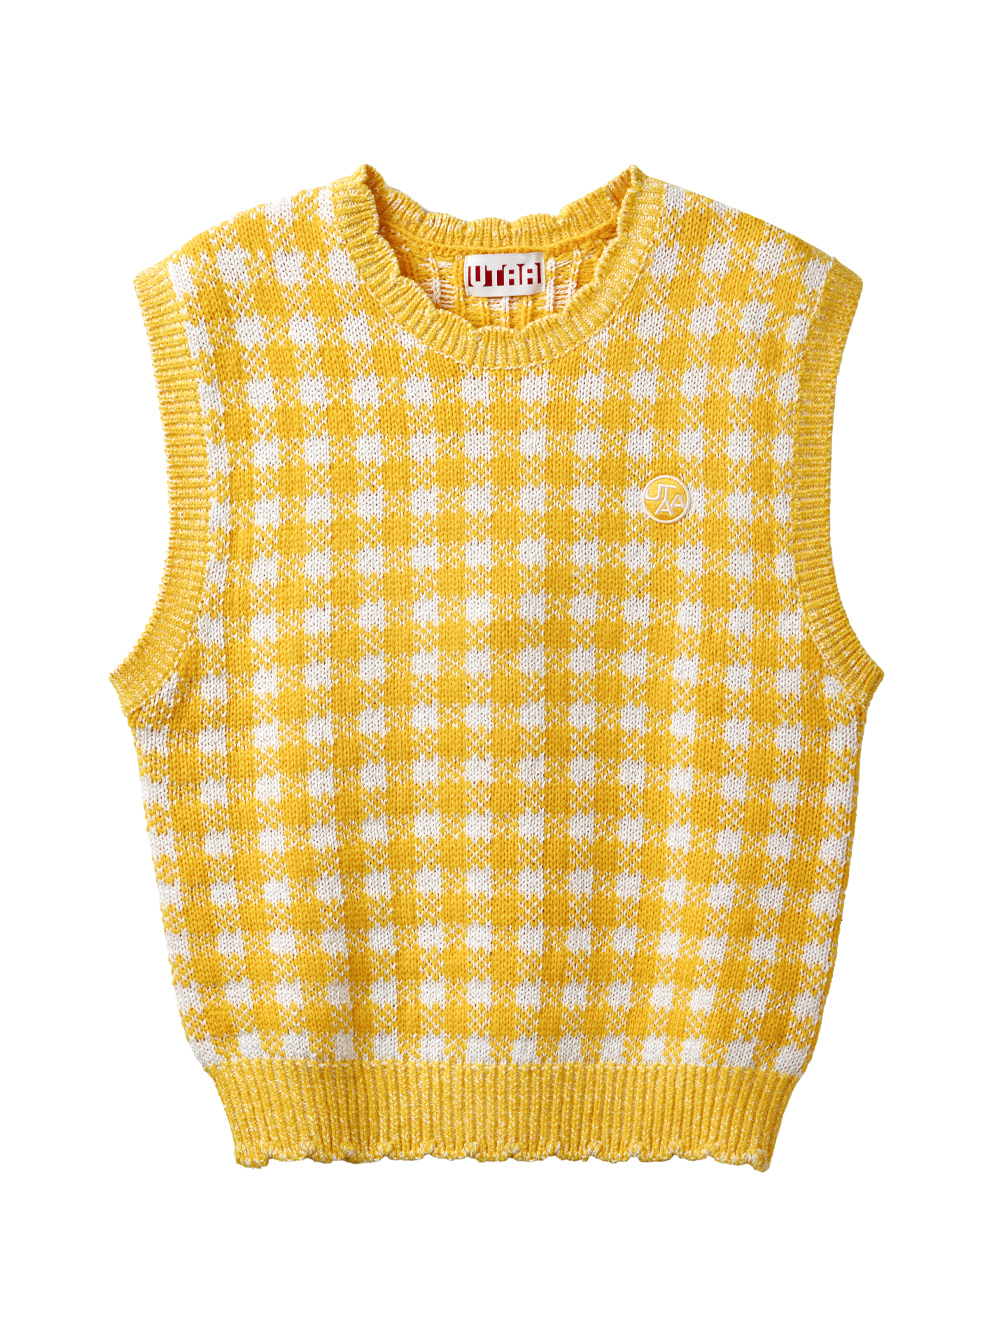 UTAA Pinking Check Knit Vest : Yellow (UB3KVF101YE)